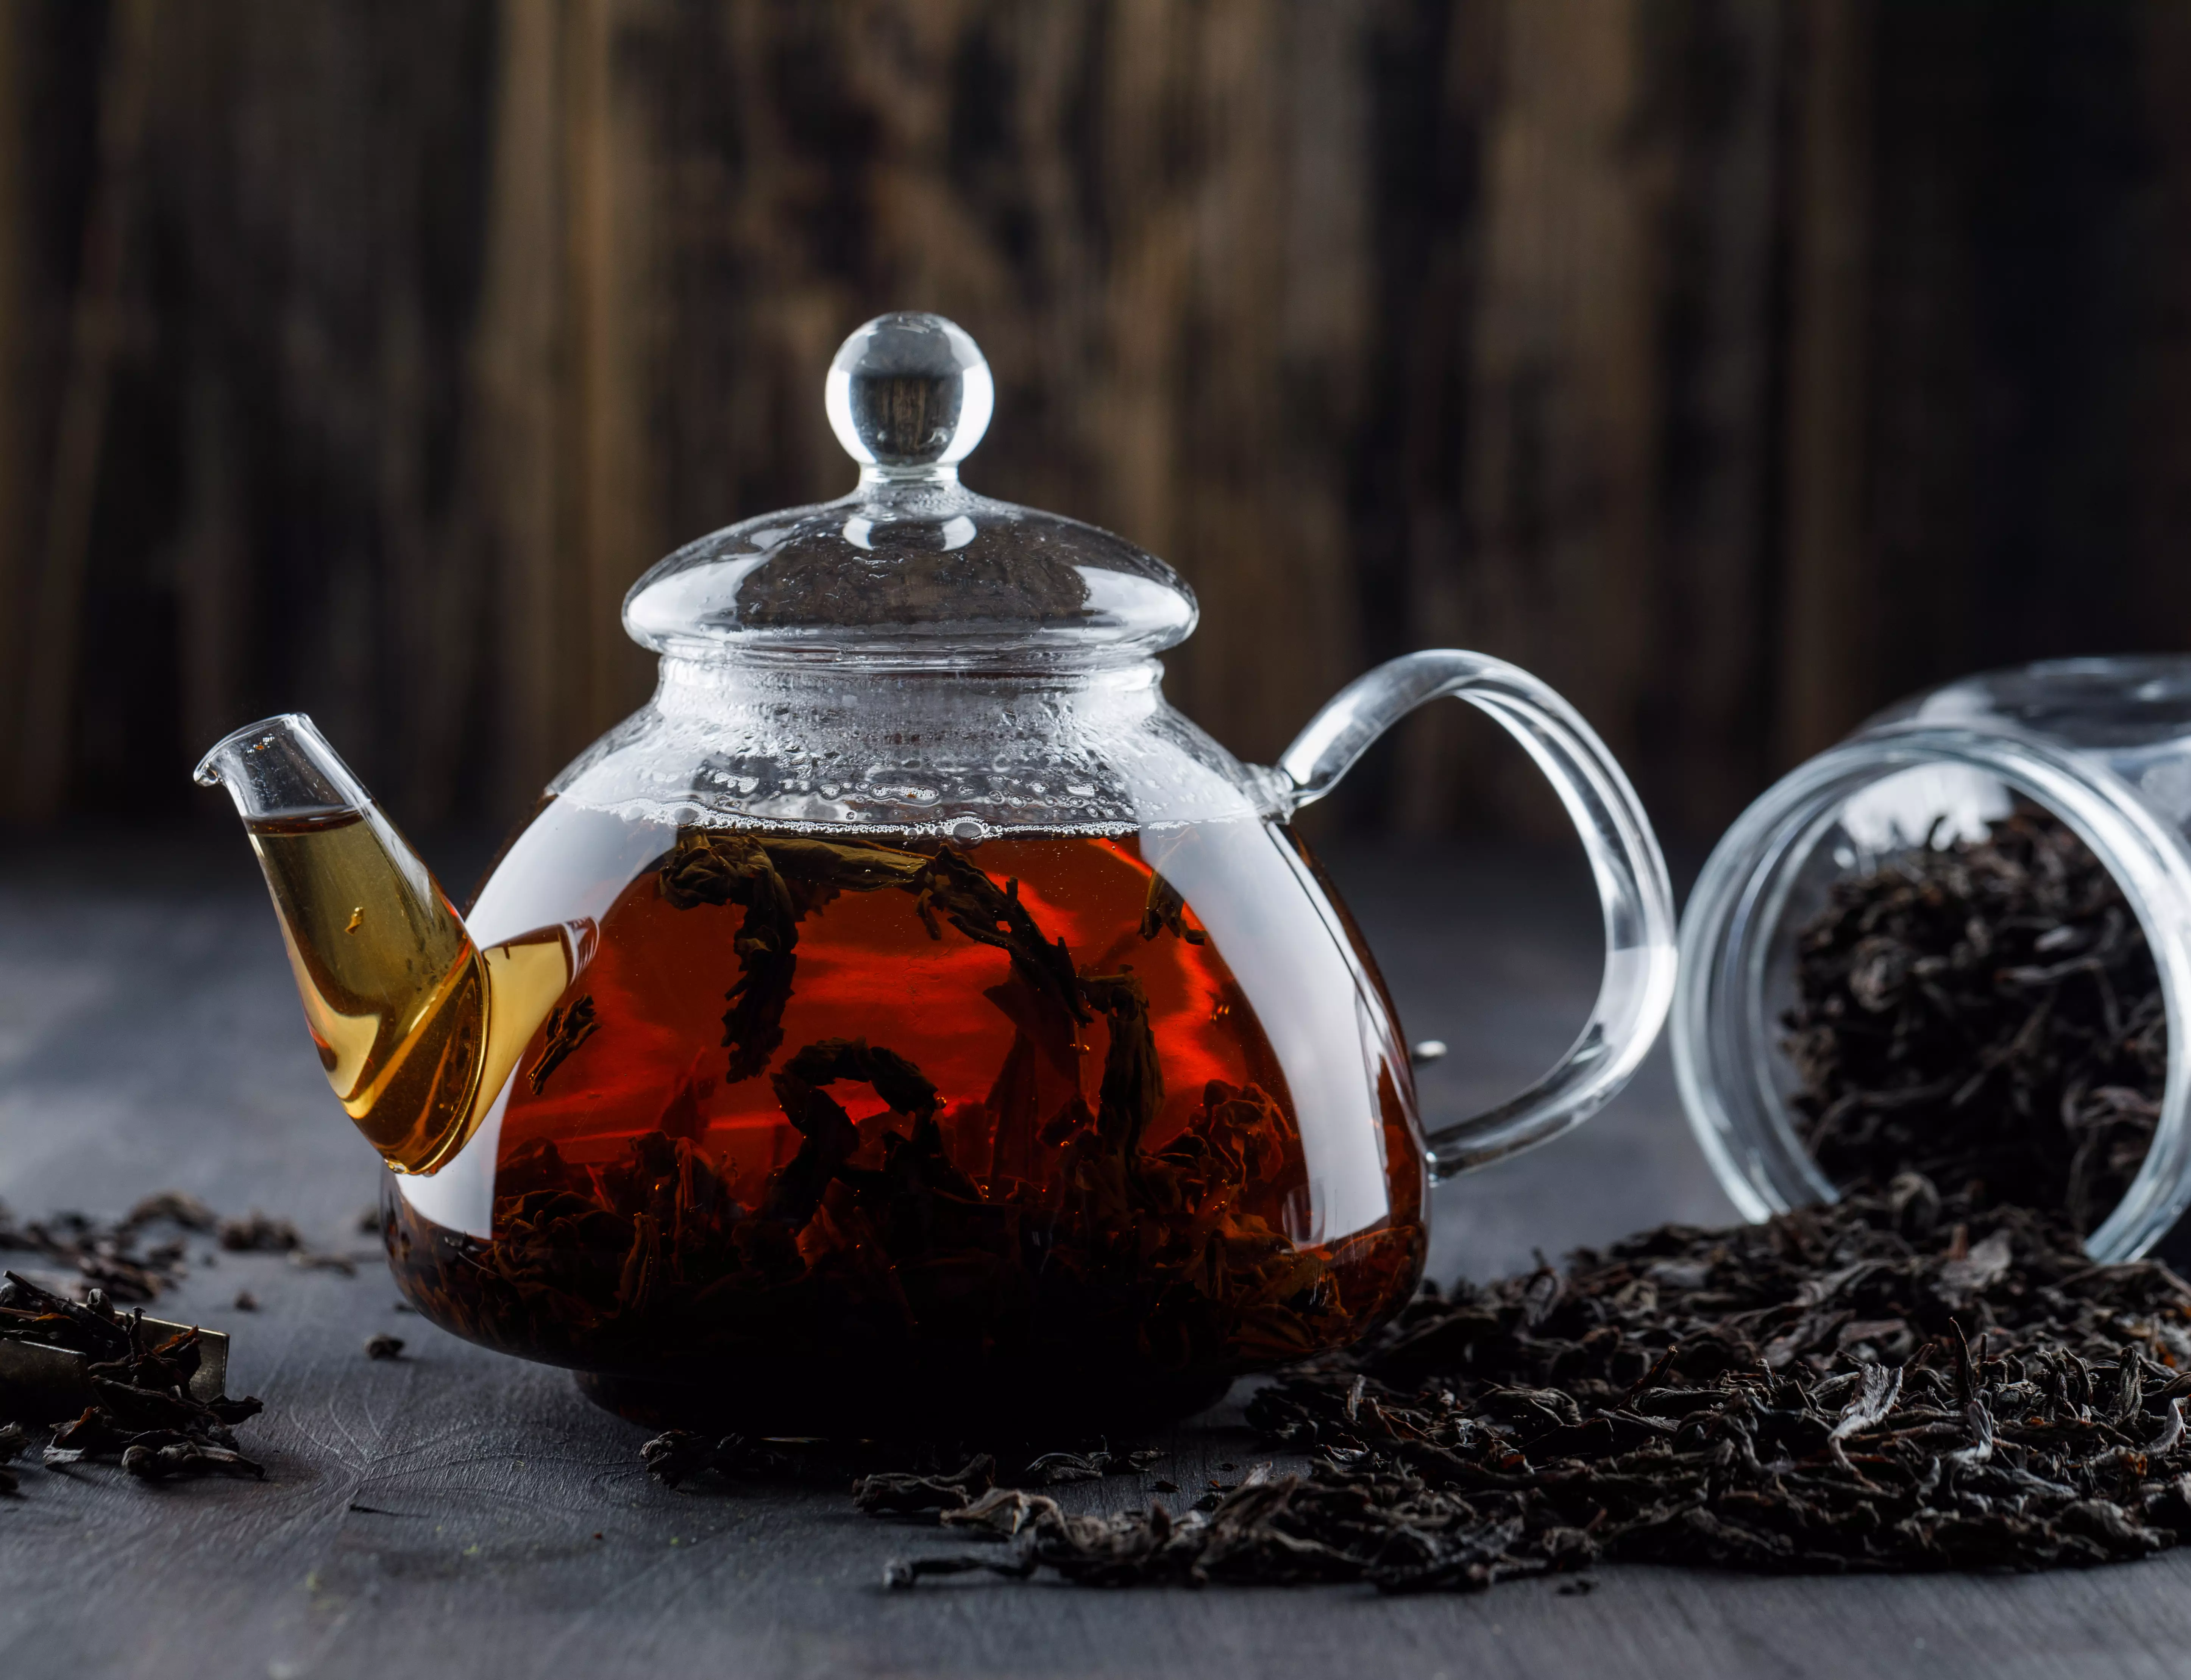 Debido a su abundante contenido de antioxidantes, el té negro se asocia con beneficios para la salud cardiovascular, intestinal y de la piel. ¿Qué dice la ciencia?